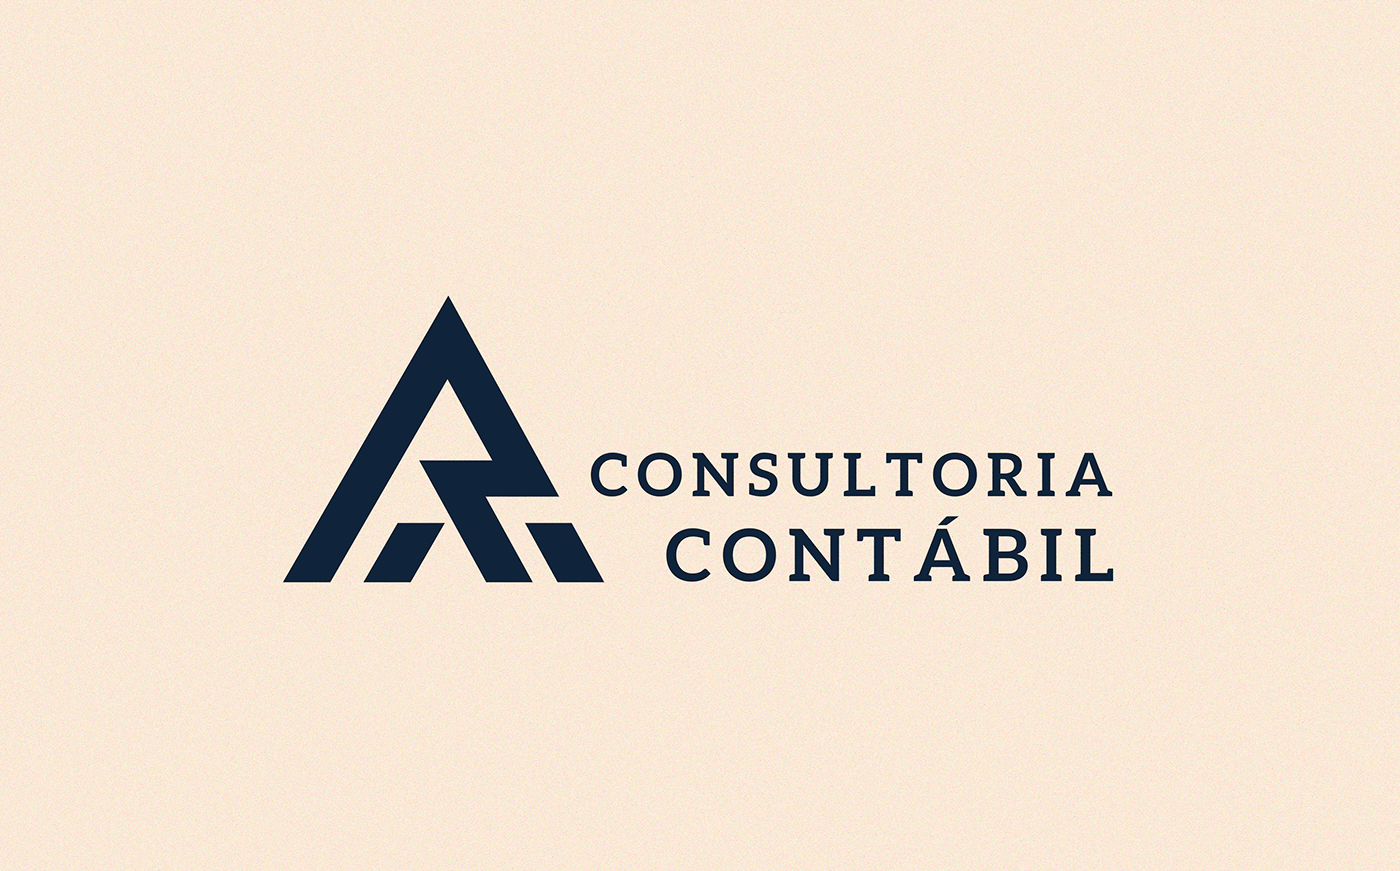 advogado Assessoria bussiness consultoria contábil contabilidade Contador crc logo